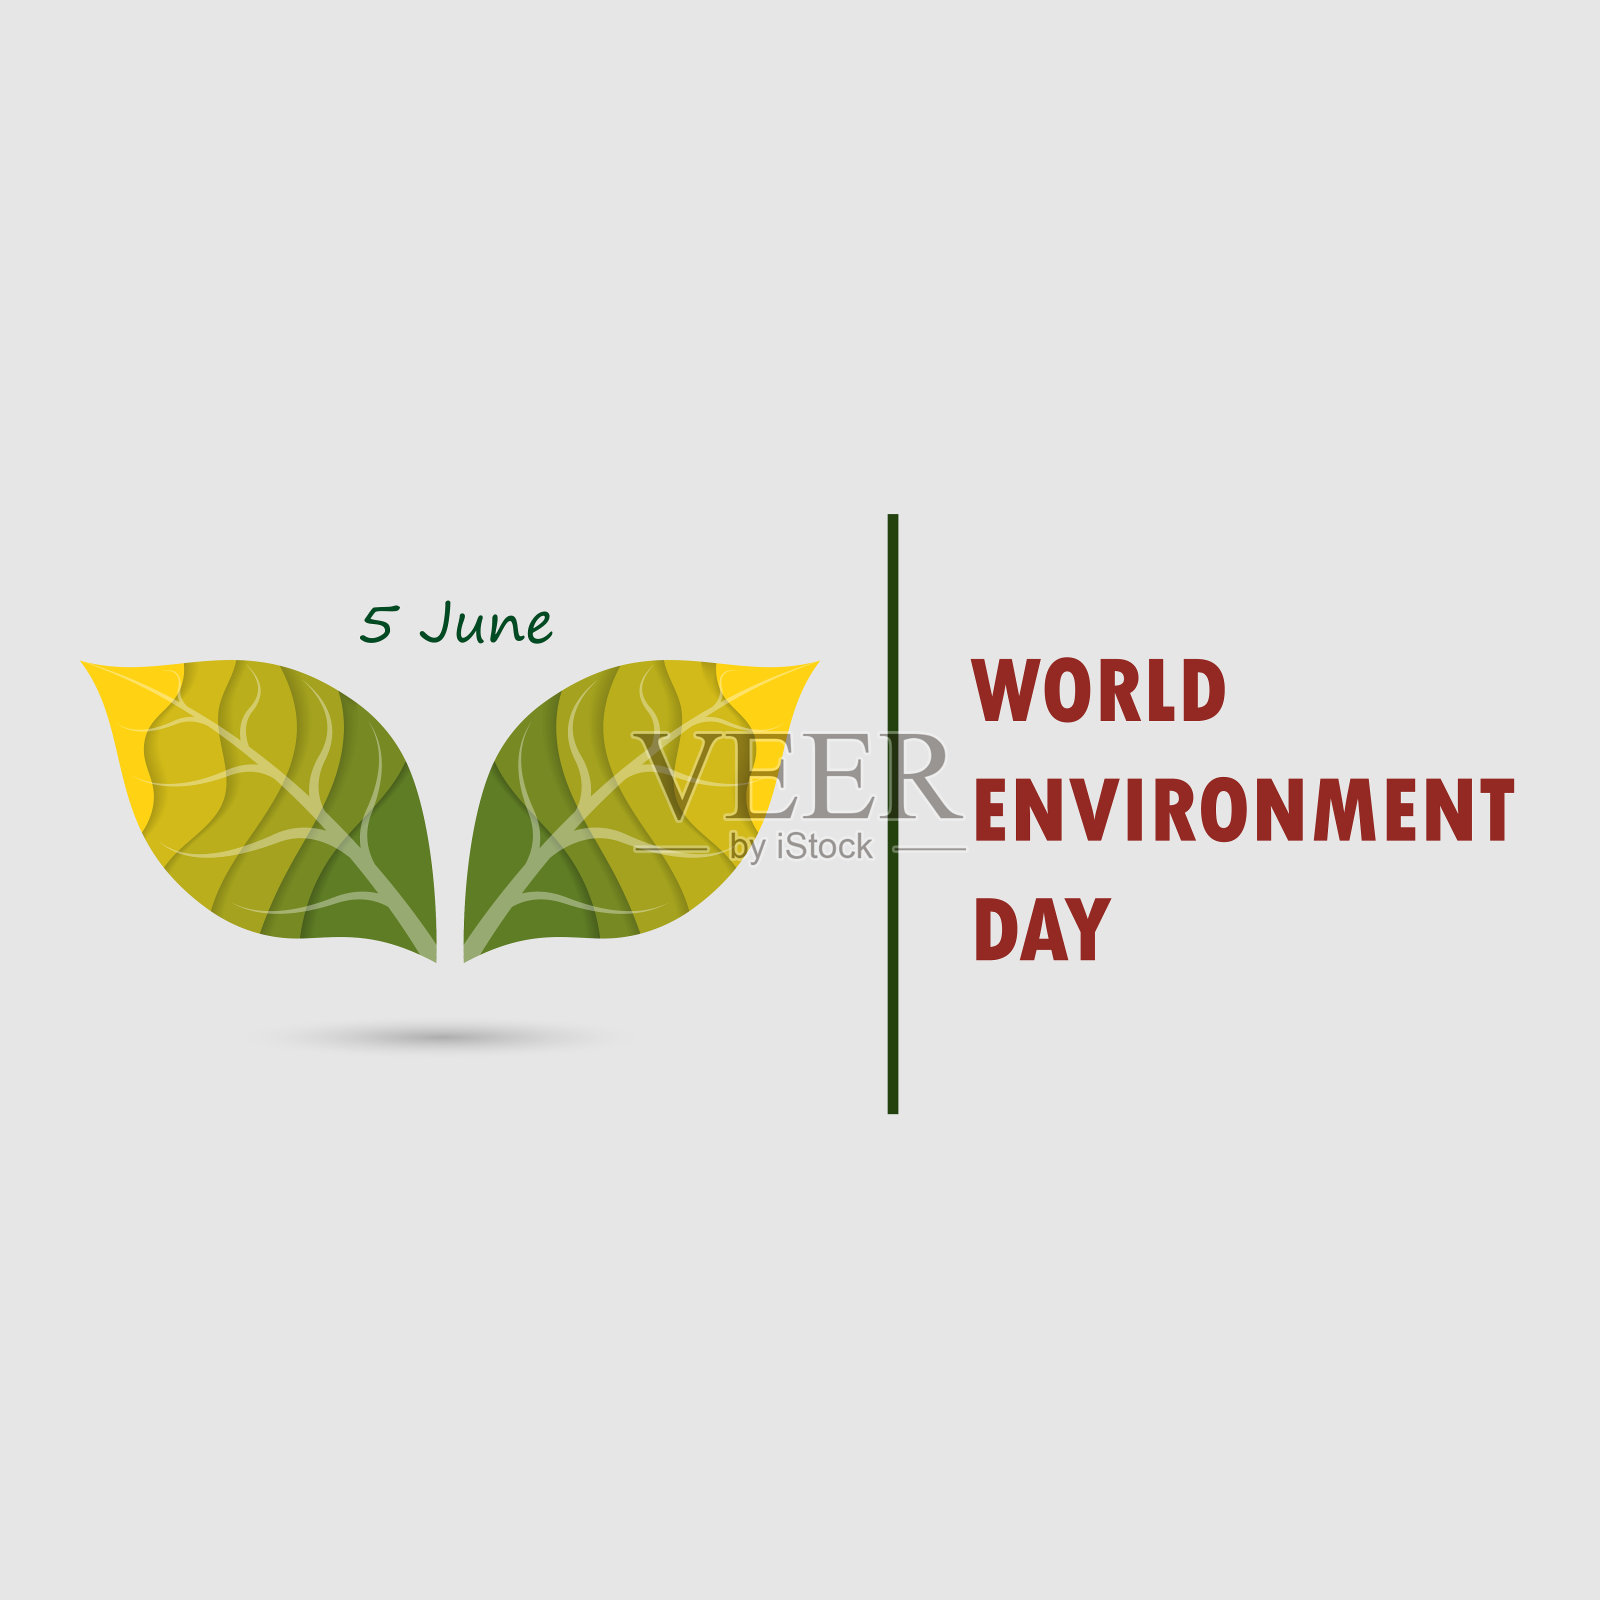 绿叶的迹象。世界环境日概念矢量标志设计模板。6月5日世界环境日概念。世界环境日意识宣传活动。矢量插图。插画图片素材